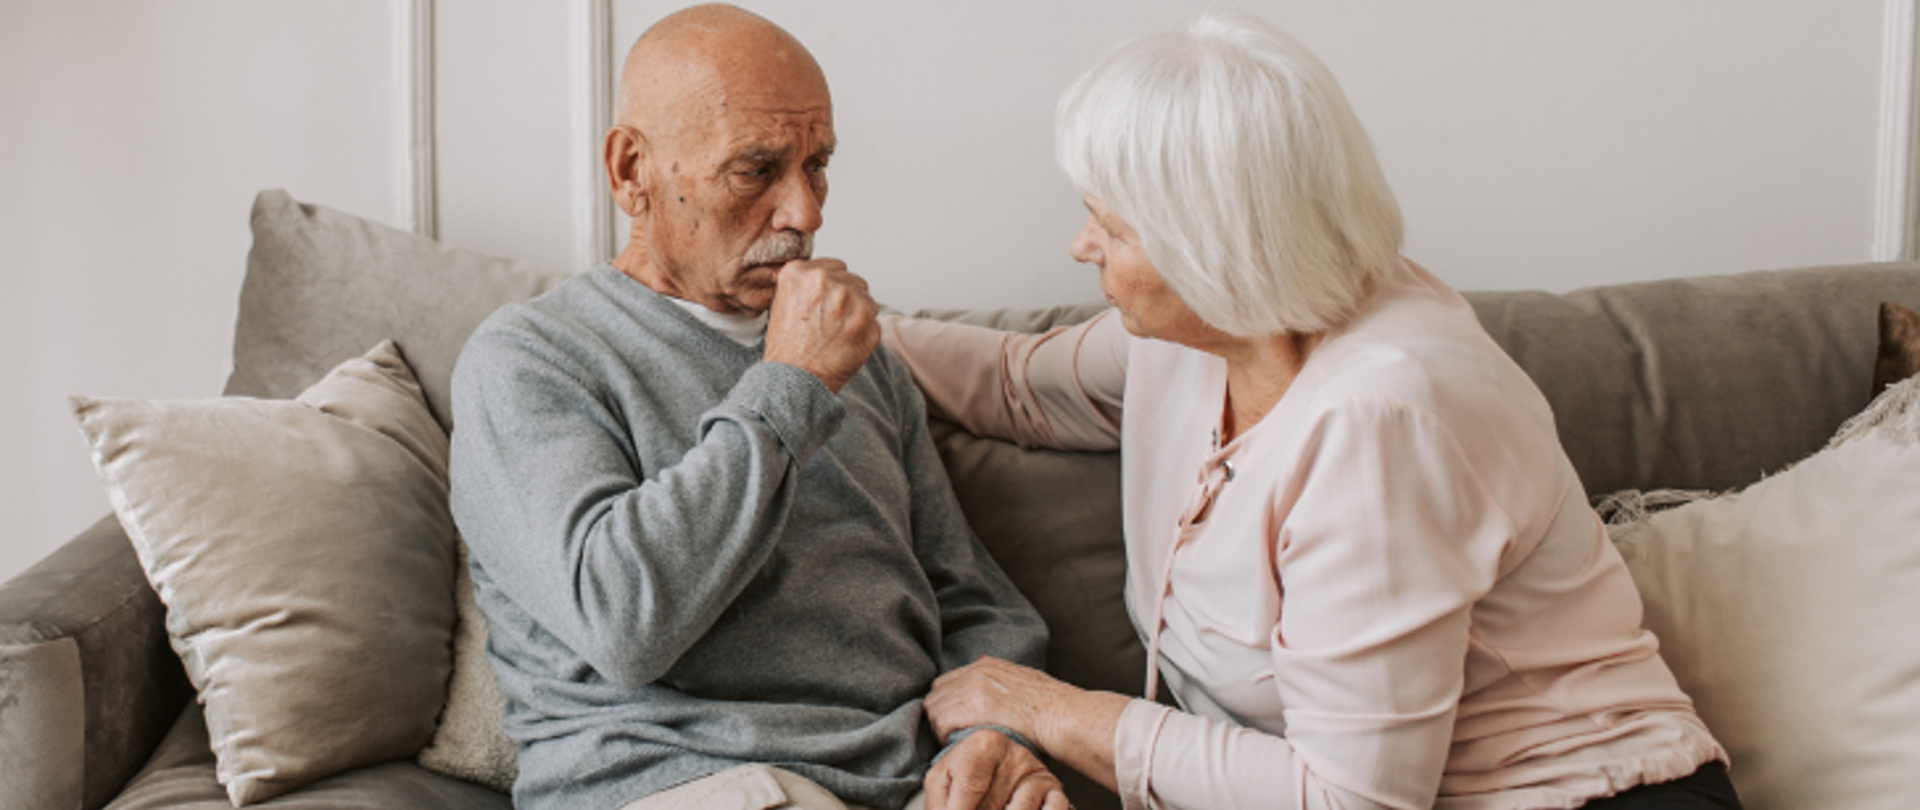 Zdjęcie przedstawia starszego mężczyznę chorującego najprawdopodobniej na astmę. Obok niego siedzi starsza kobieta, która czule się nim opiekuje.